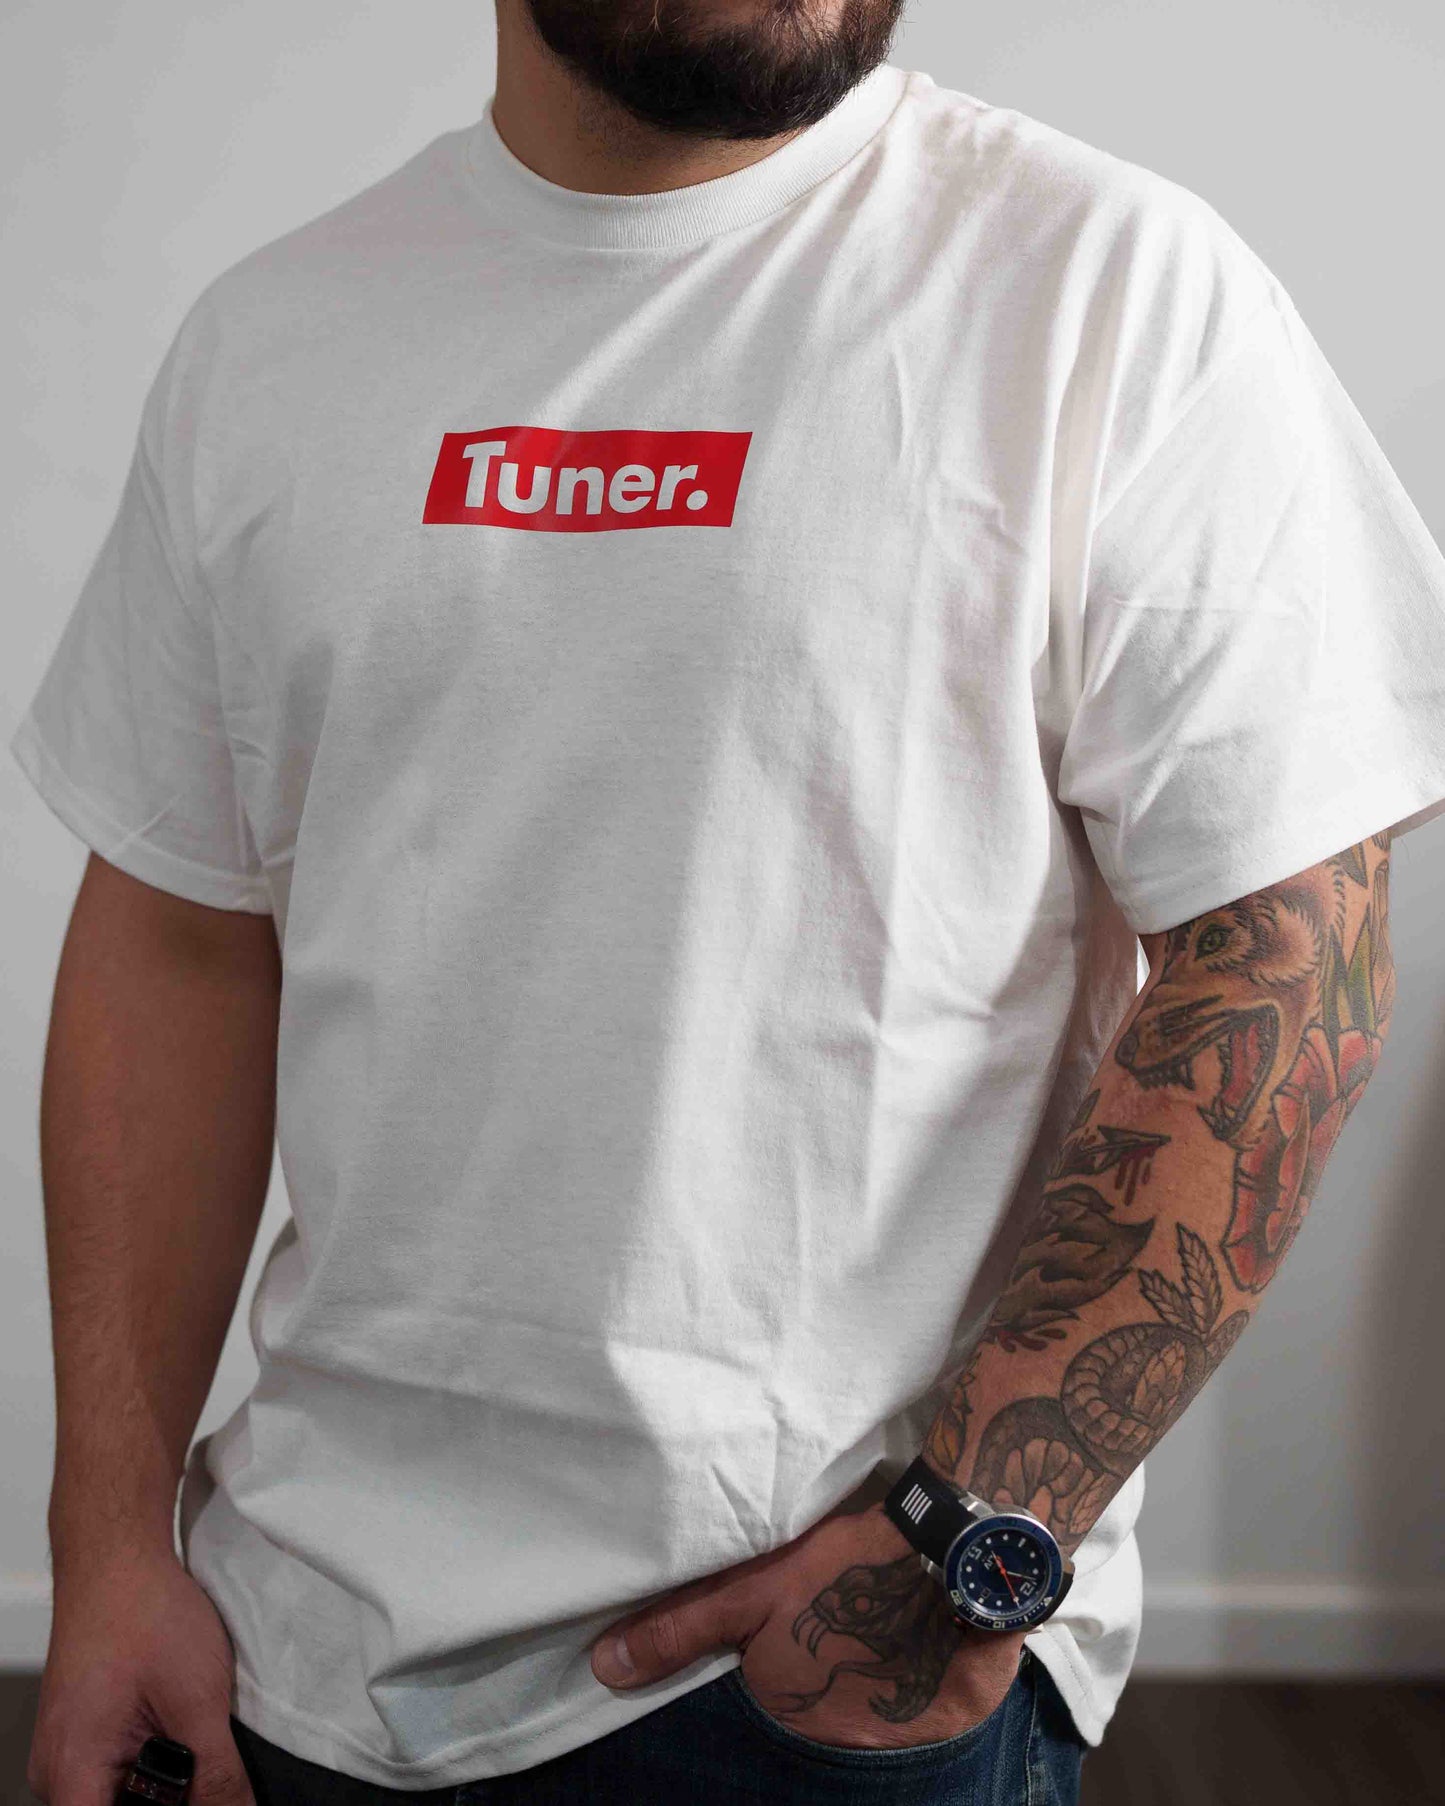 Tuner Shirt